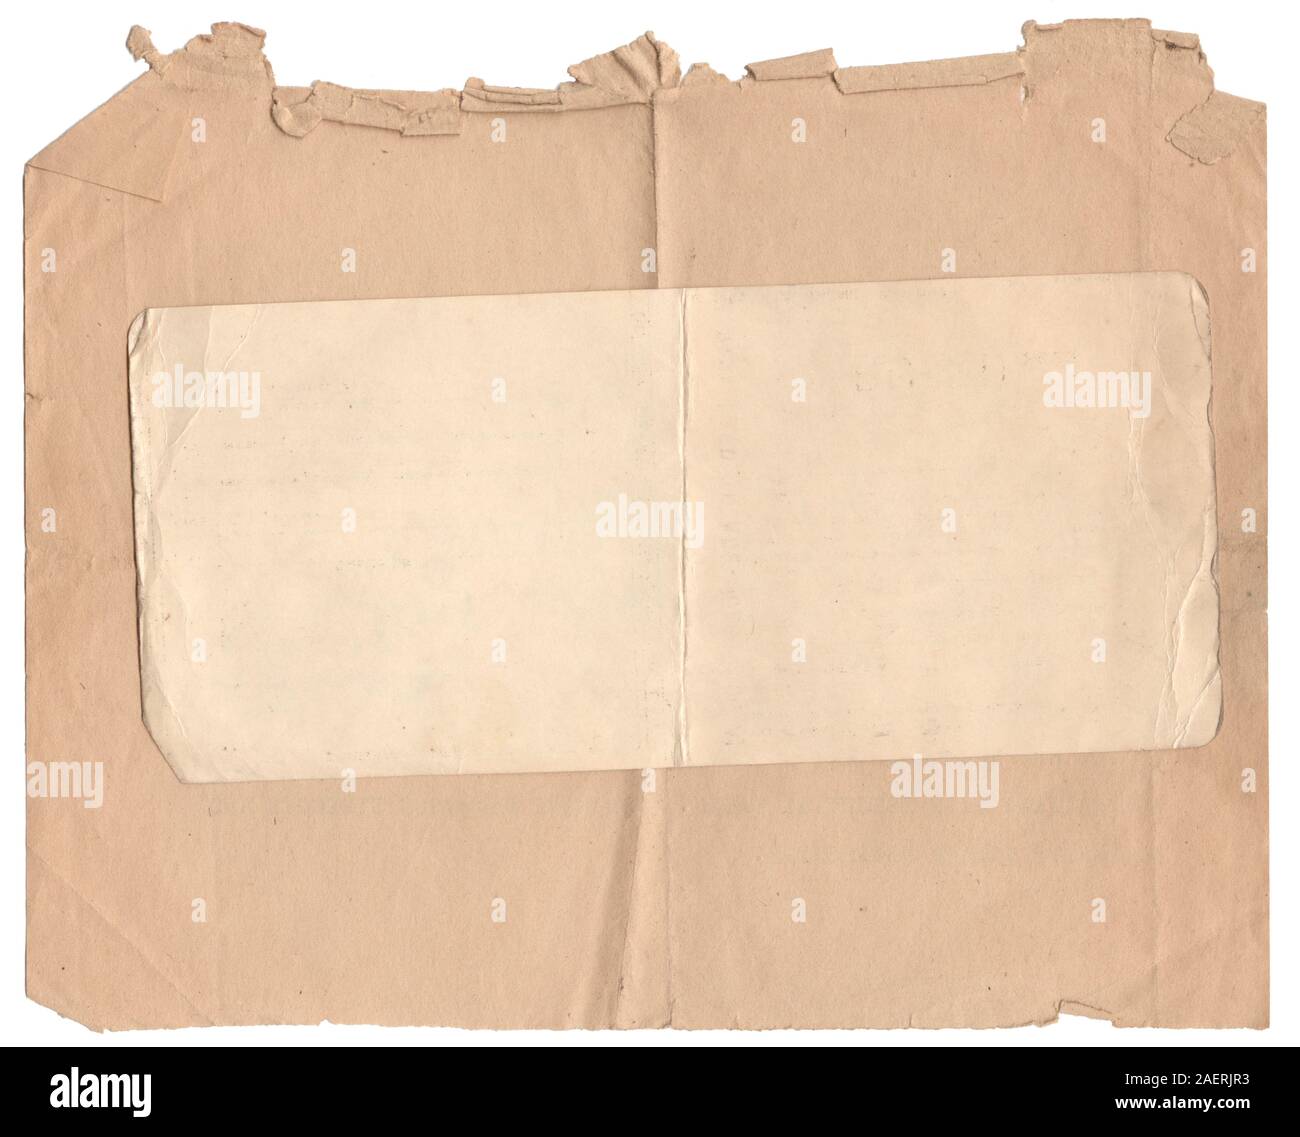 Numérisation haute résolution de deux vieux morceaux de papier brun de 1960 montre tous les grungy détail. Arrière-plan blanc. Banque D'Images